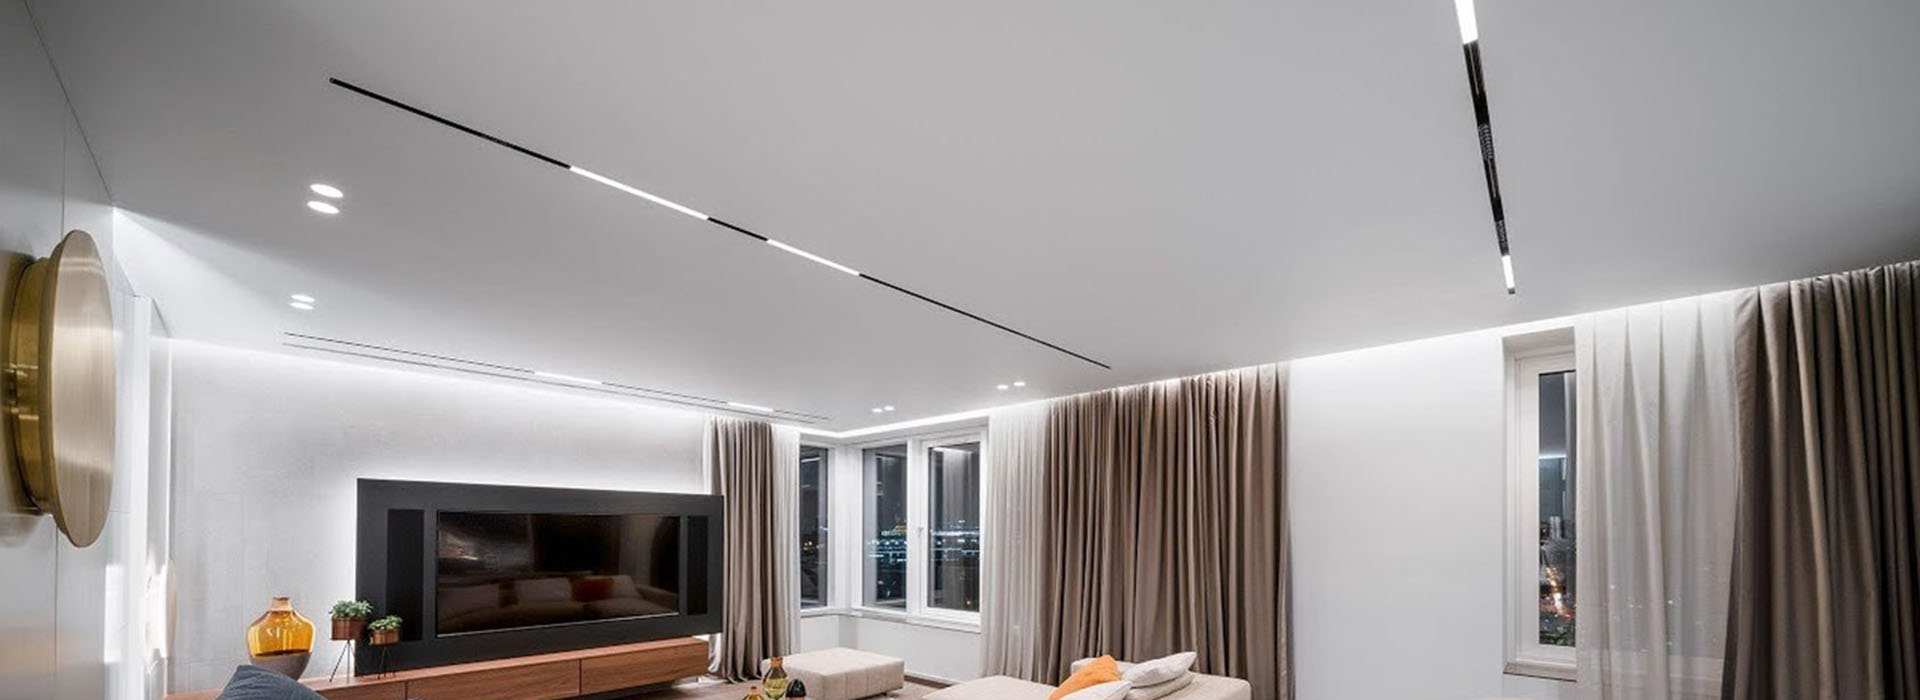 Дизайн и стиль в интерьере с натяжными потолками